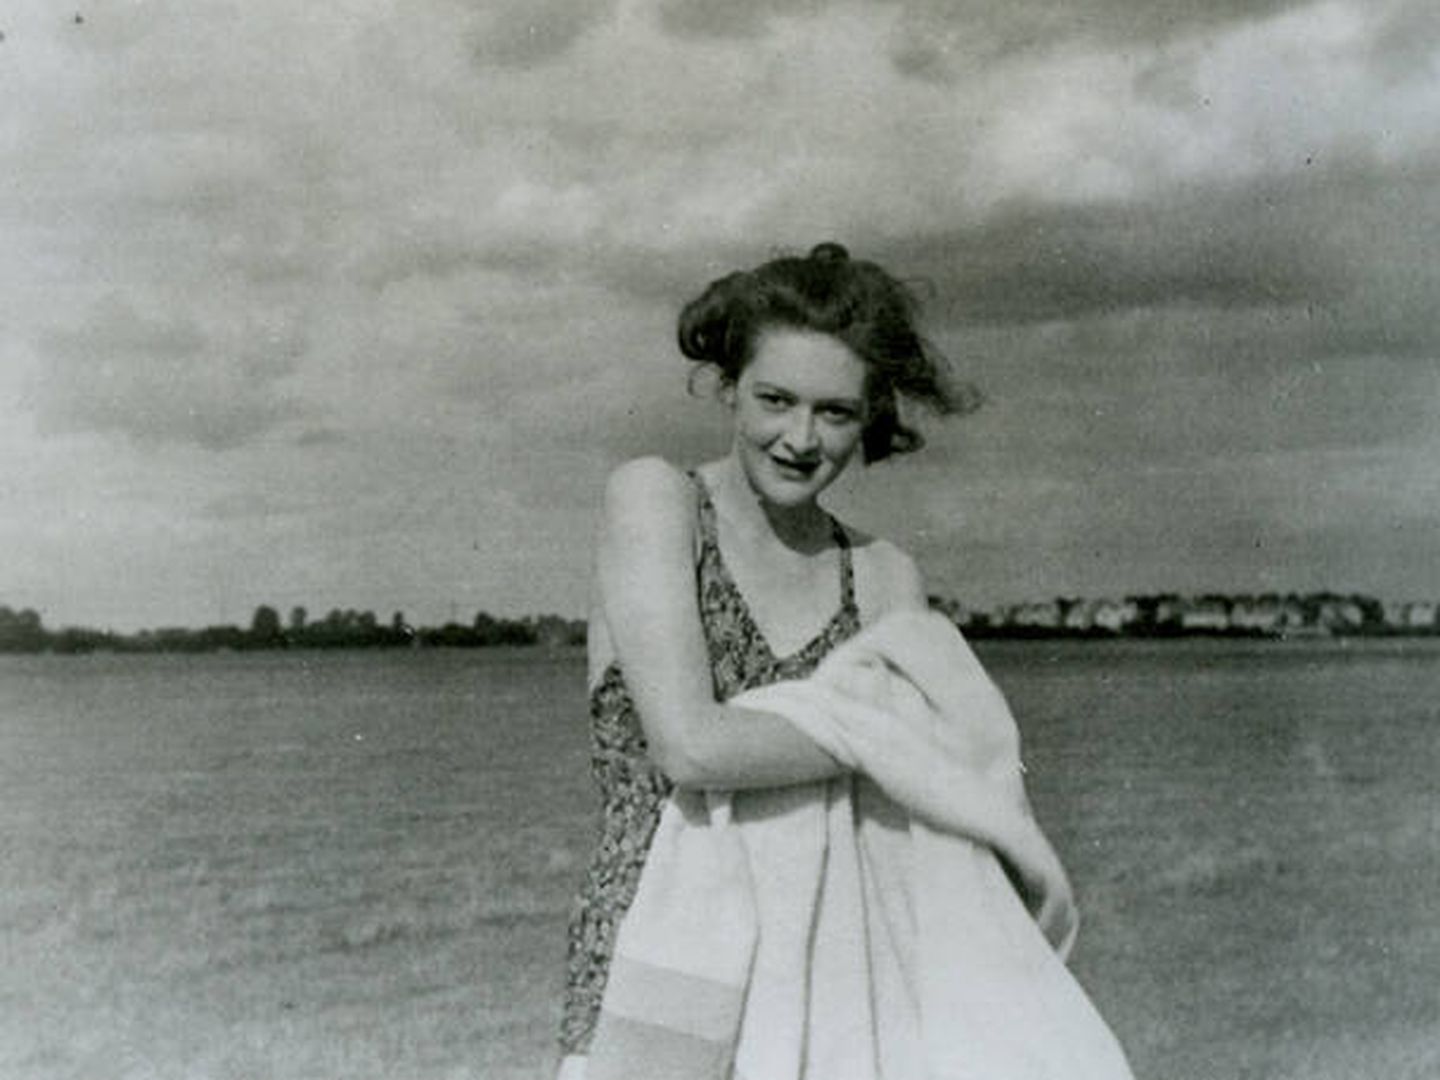 Fotografía que llevaba William Martin de 'Pam', la novia que no existía. (Wikipedia)